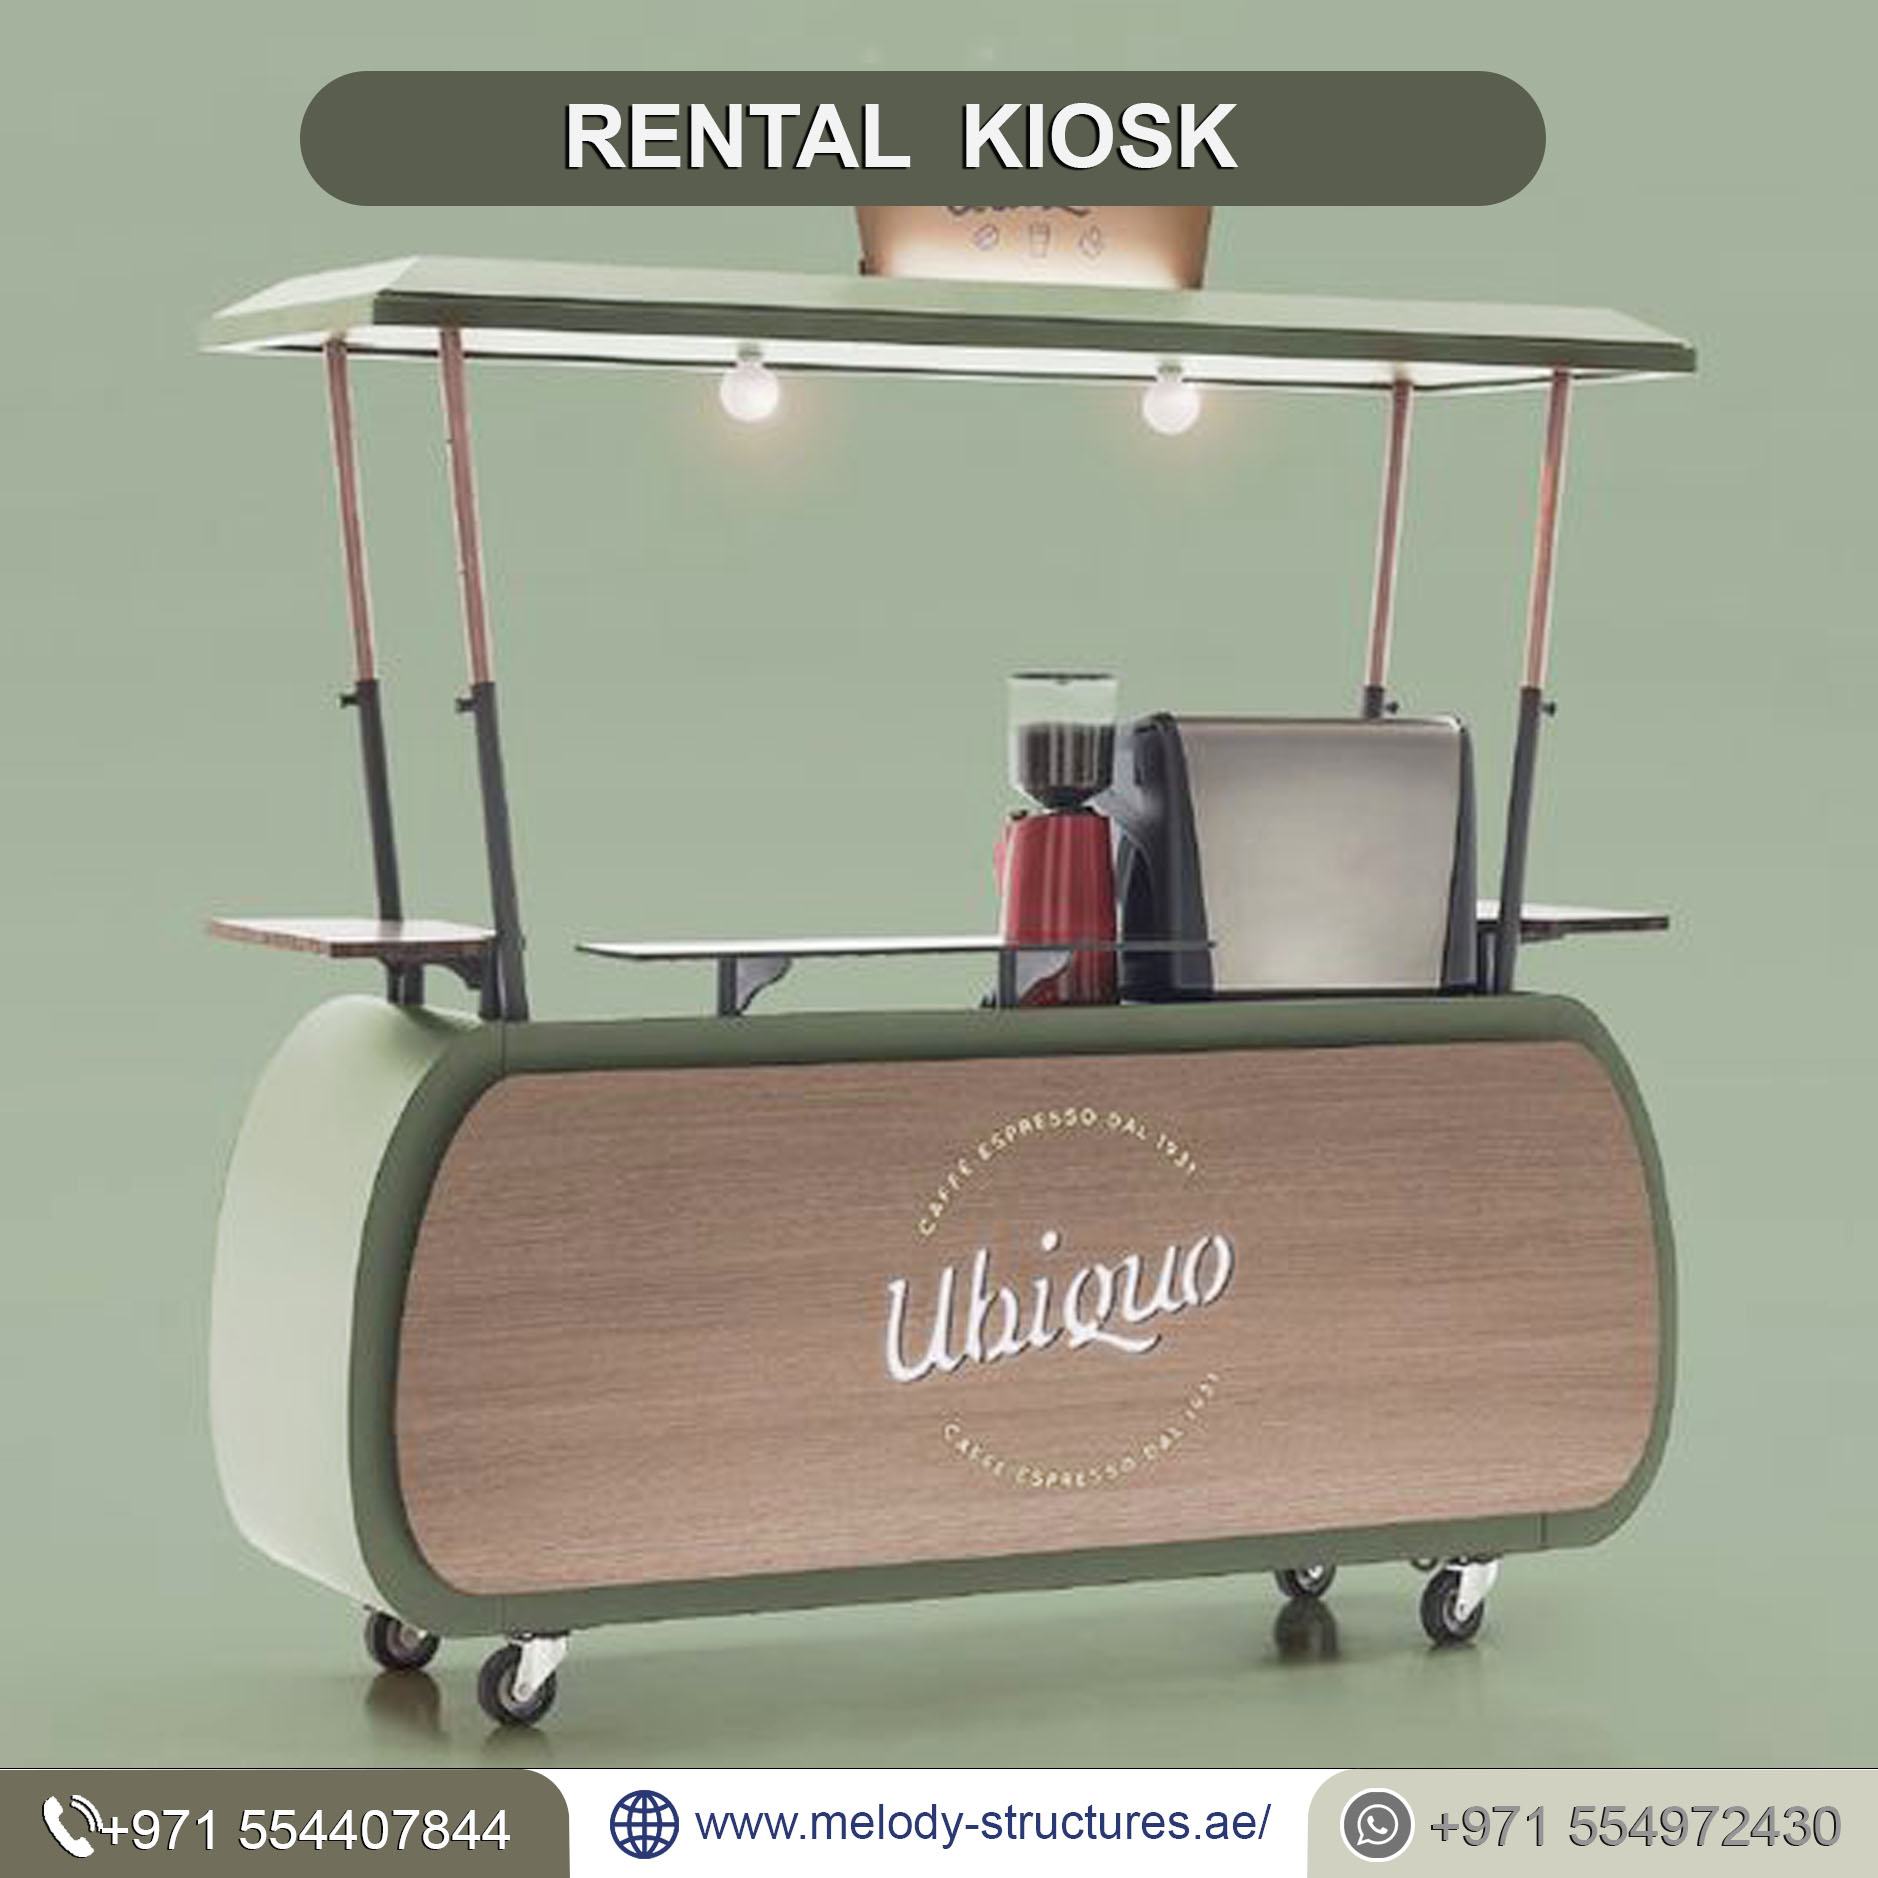 Rental Kiosk in UAE (2).jpg